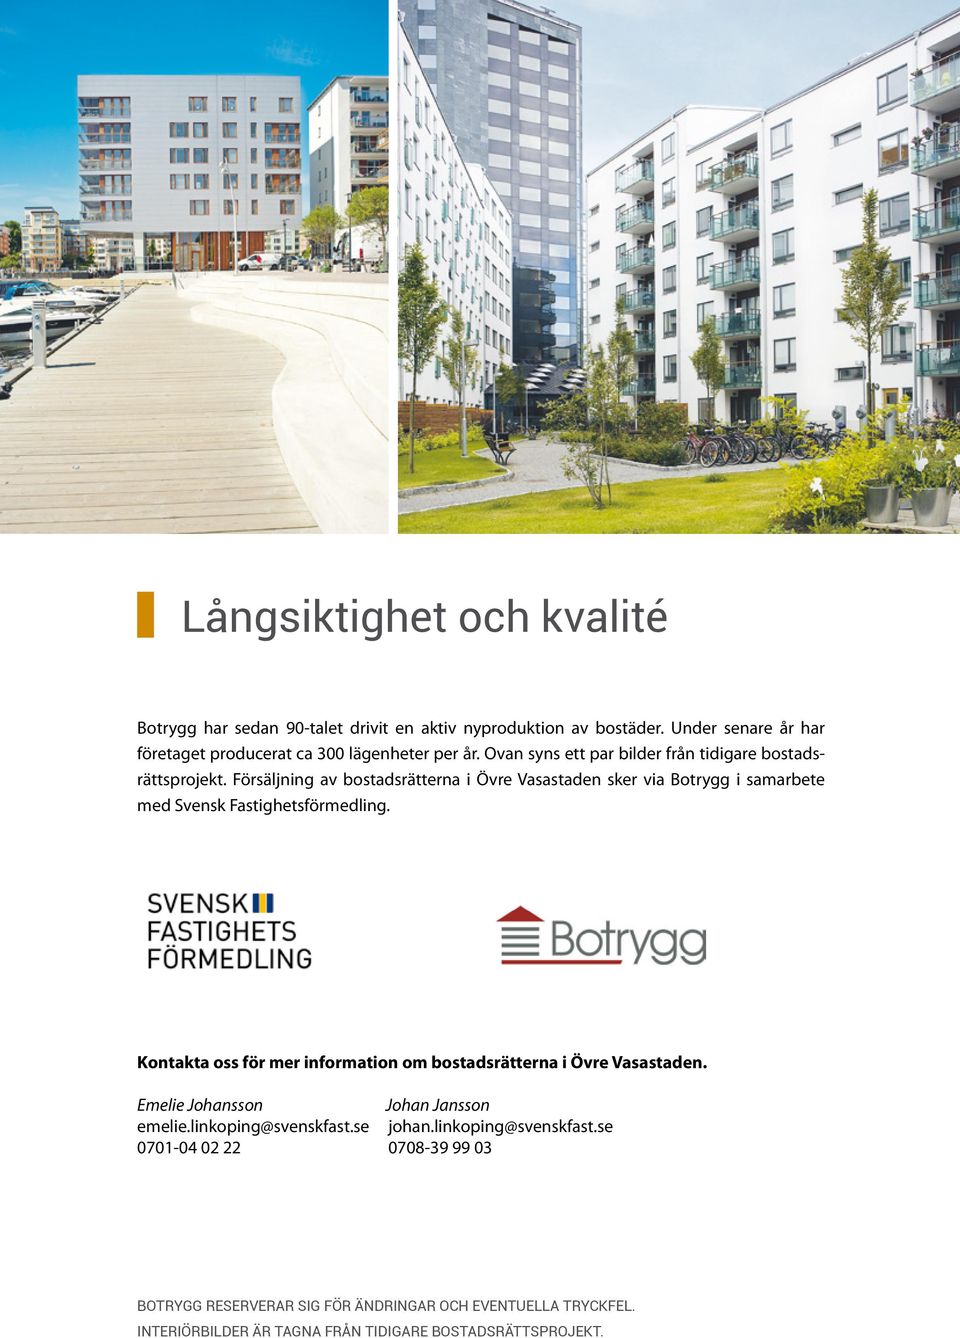 Försäljning av bostadsrätterna i Övre Vasastaden sker via Botrygg i samarbete med Svensk Fastighetsförmedling.